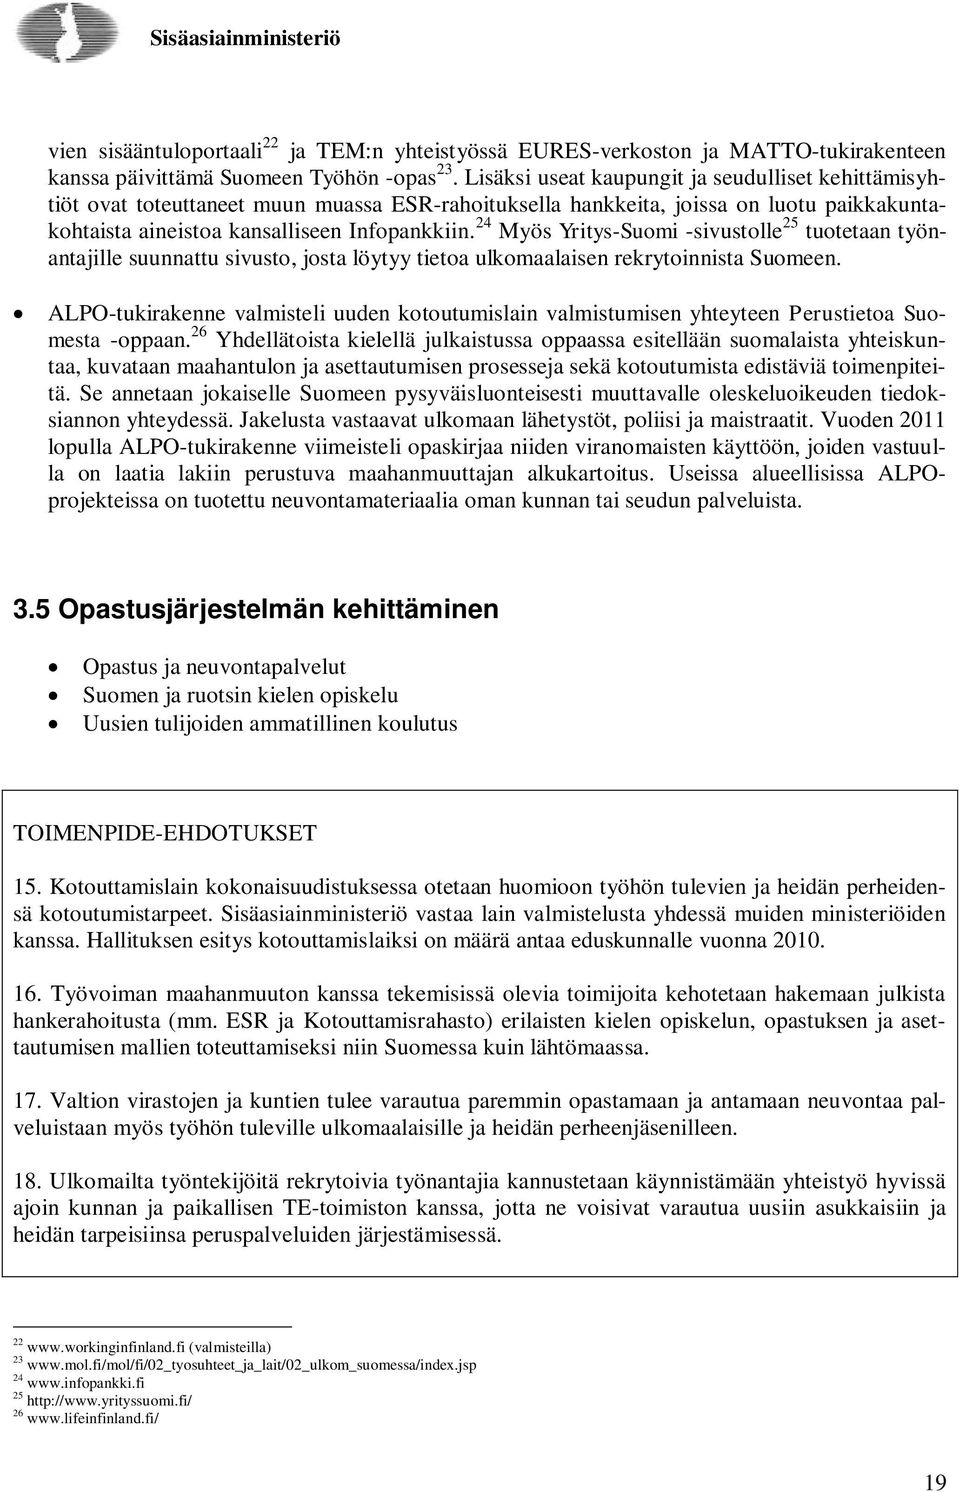 24 Myös Yritys-Suomi -sivustolle 25 tuotetaan työnantajille suunnattu sivusto, josta löytyy tietoa ulkomaalaisen rekrytoinnista Suomeen.